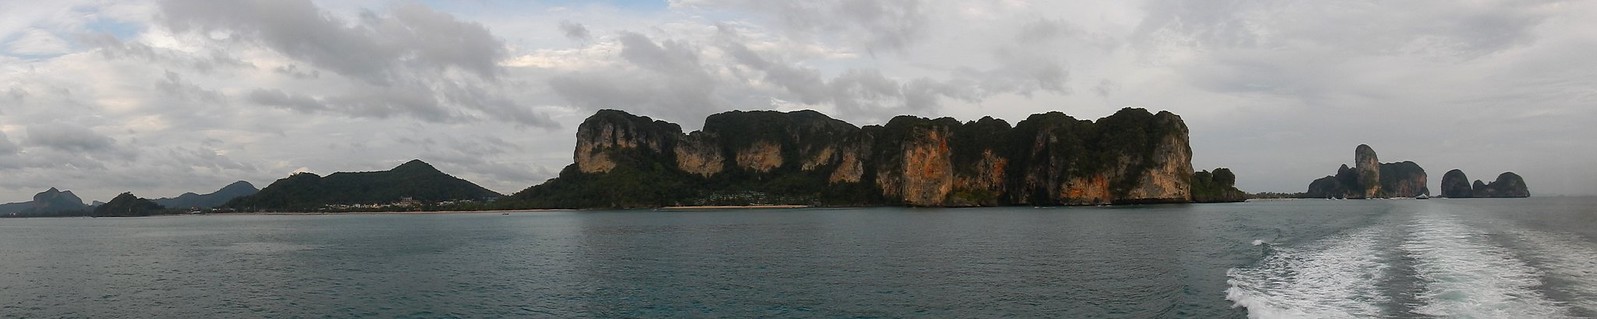 Rumbo a Ao Nang: navegando entre gigantes de roca - TAILANDIA POR LIBRE: TEMPLOS, ISLAS Y PLAYAS (24)